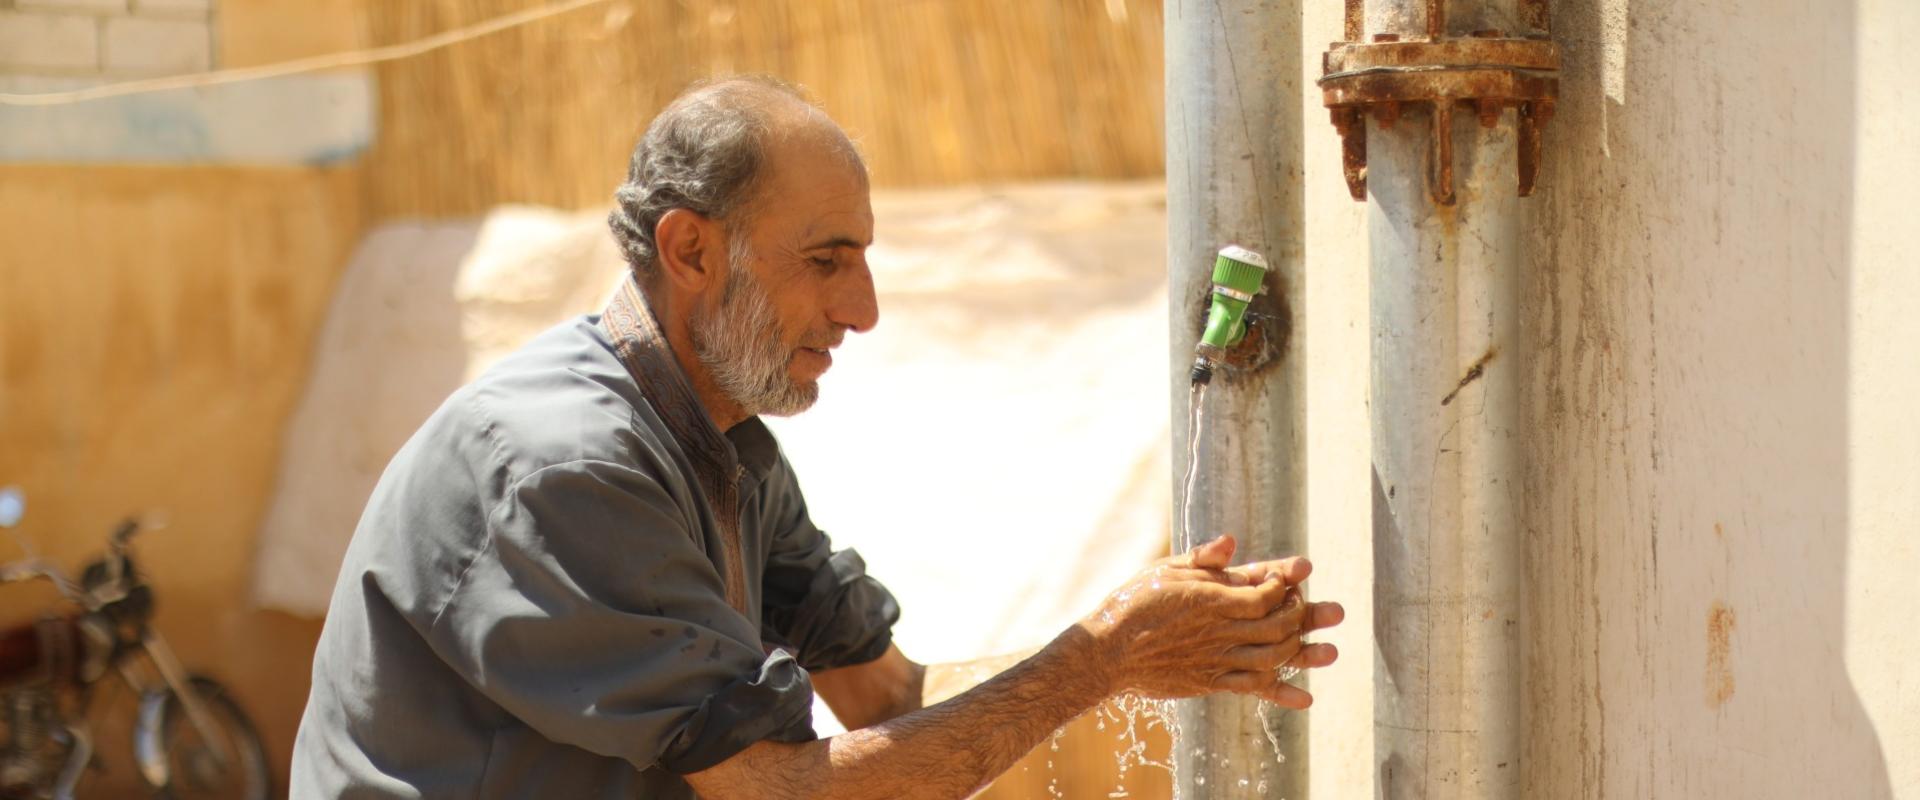 Un homme se lave les mains dans un camp de réfugiés en Syrie